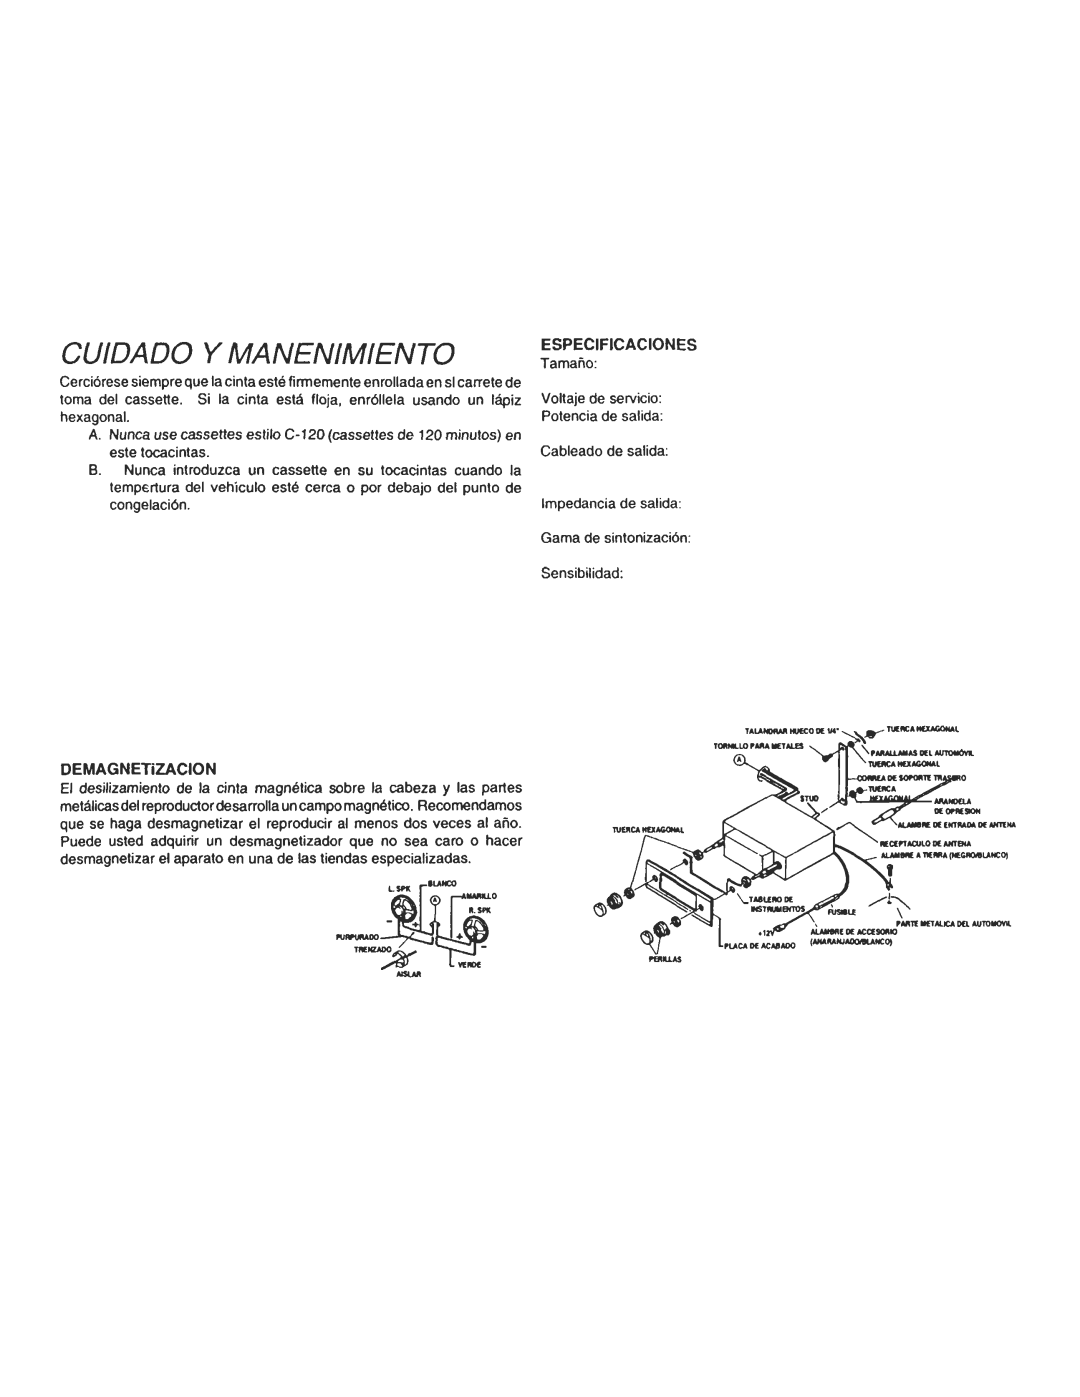 Audiovox Cassette Player owner manual CUIDADO y MANENIMIENTO, ESPECIFICACIONES Tamano 